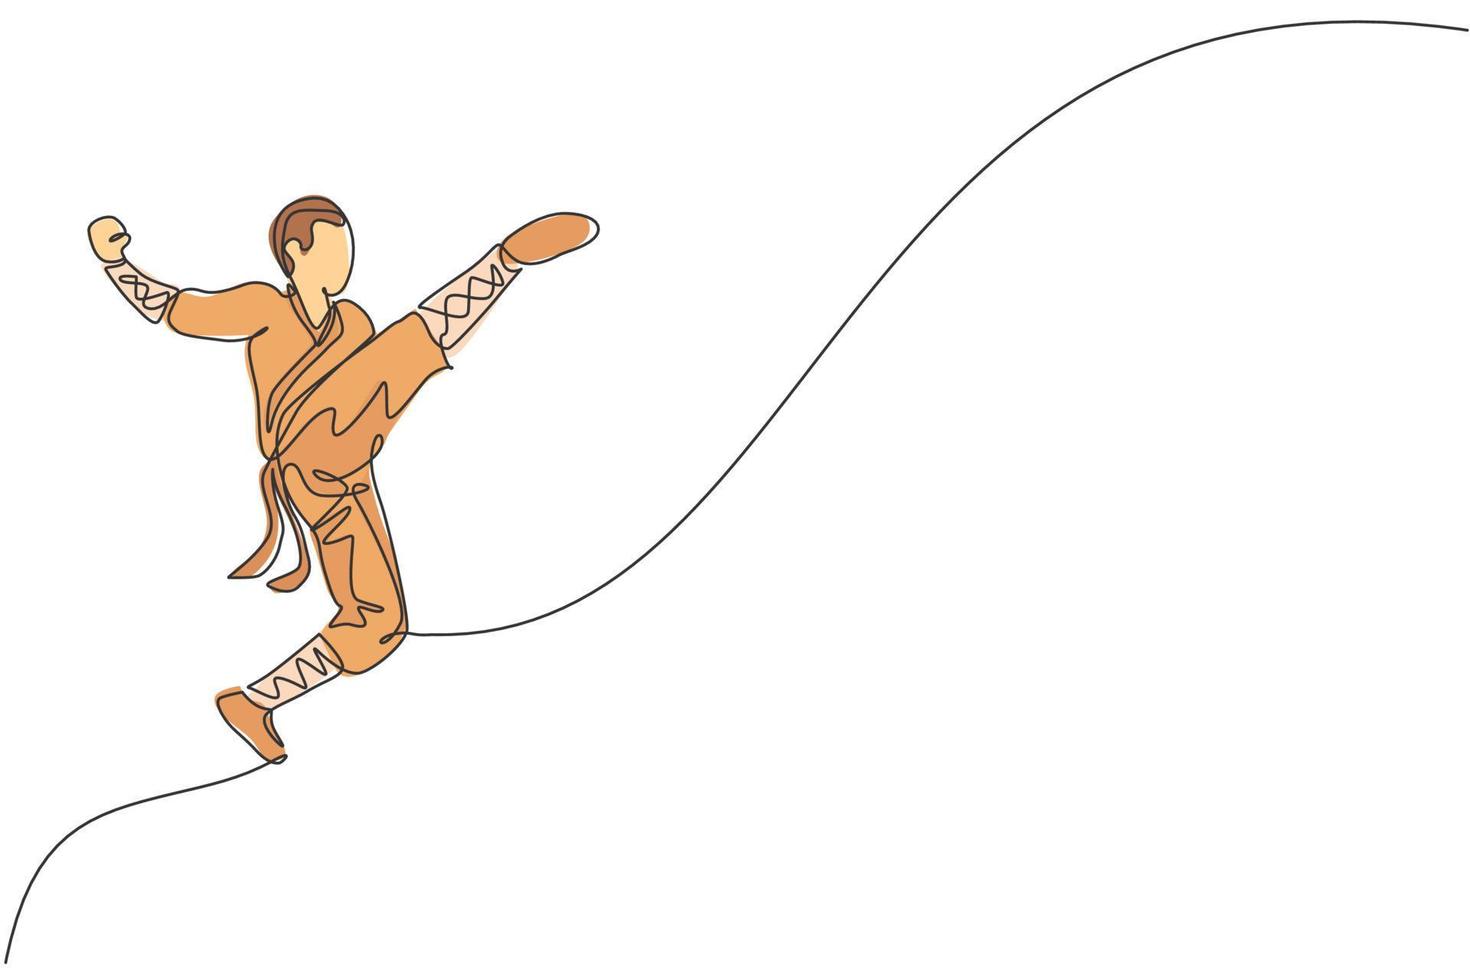 enda kontinuerlig linjeteckning ung muskulös shaolin munk man tåg hoppa spark på shaolin tempel. traditionell kinesisk kung fu kamp koncept. trendiga en rad rita grafisk design vektorillustration vektor